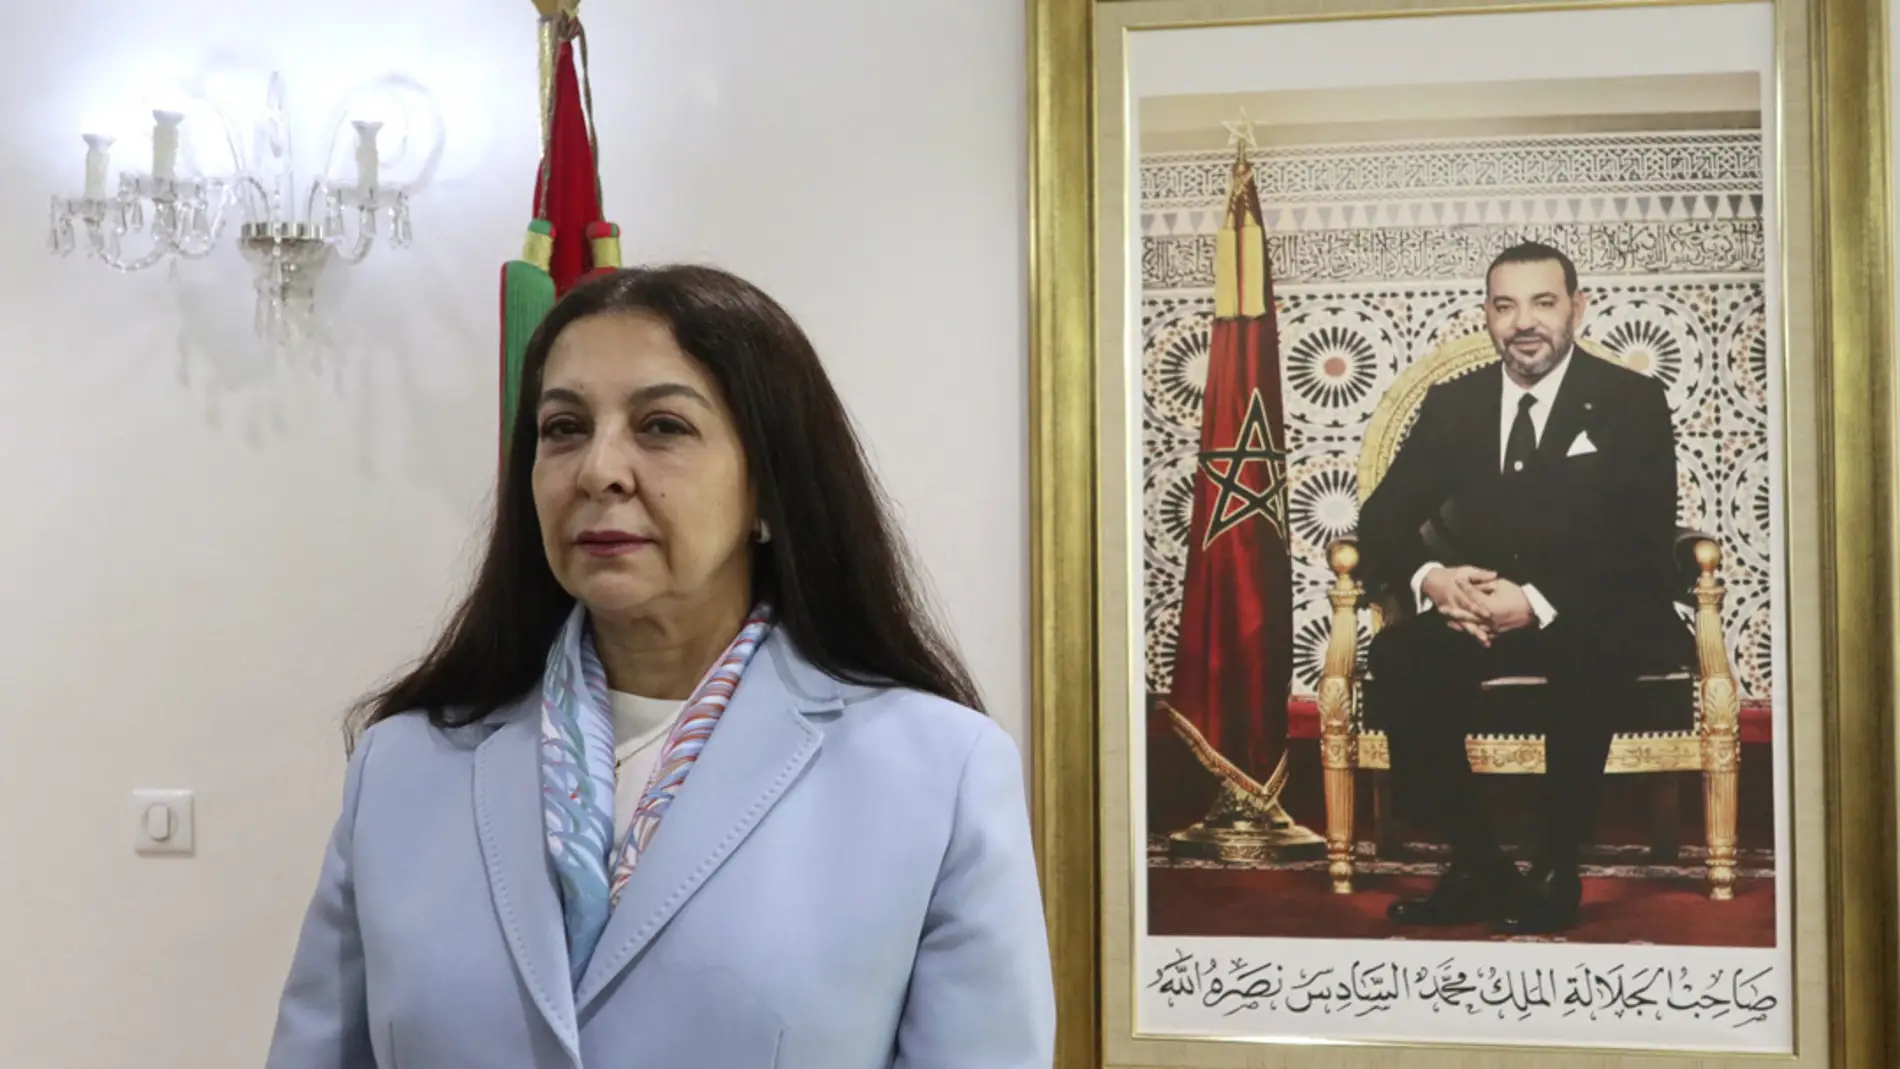 La embajadora marroquí en España Karima Benyaich, en una imagen de archivo